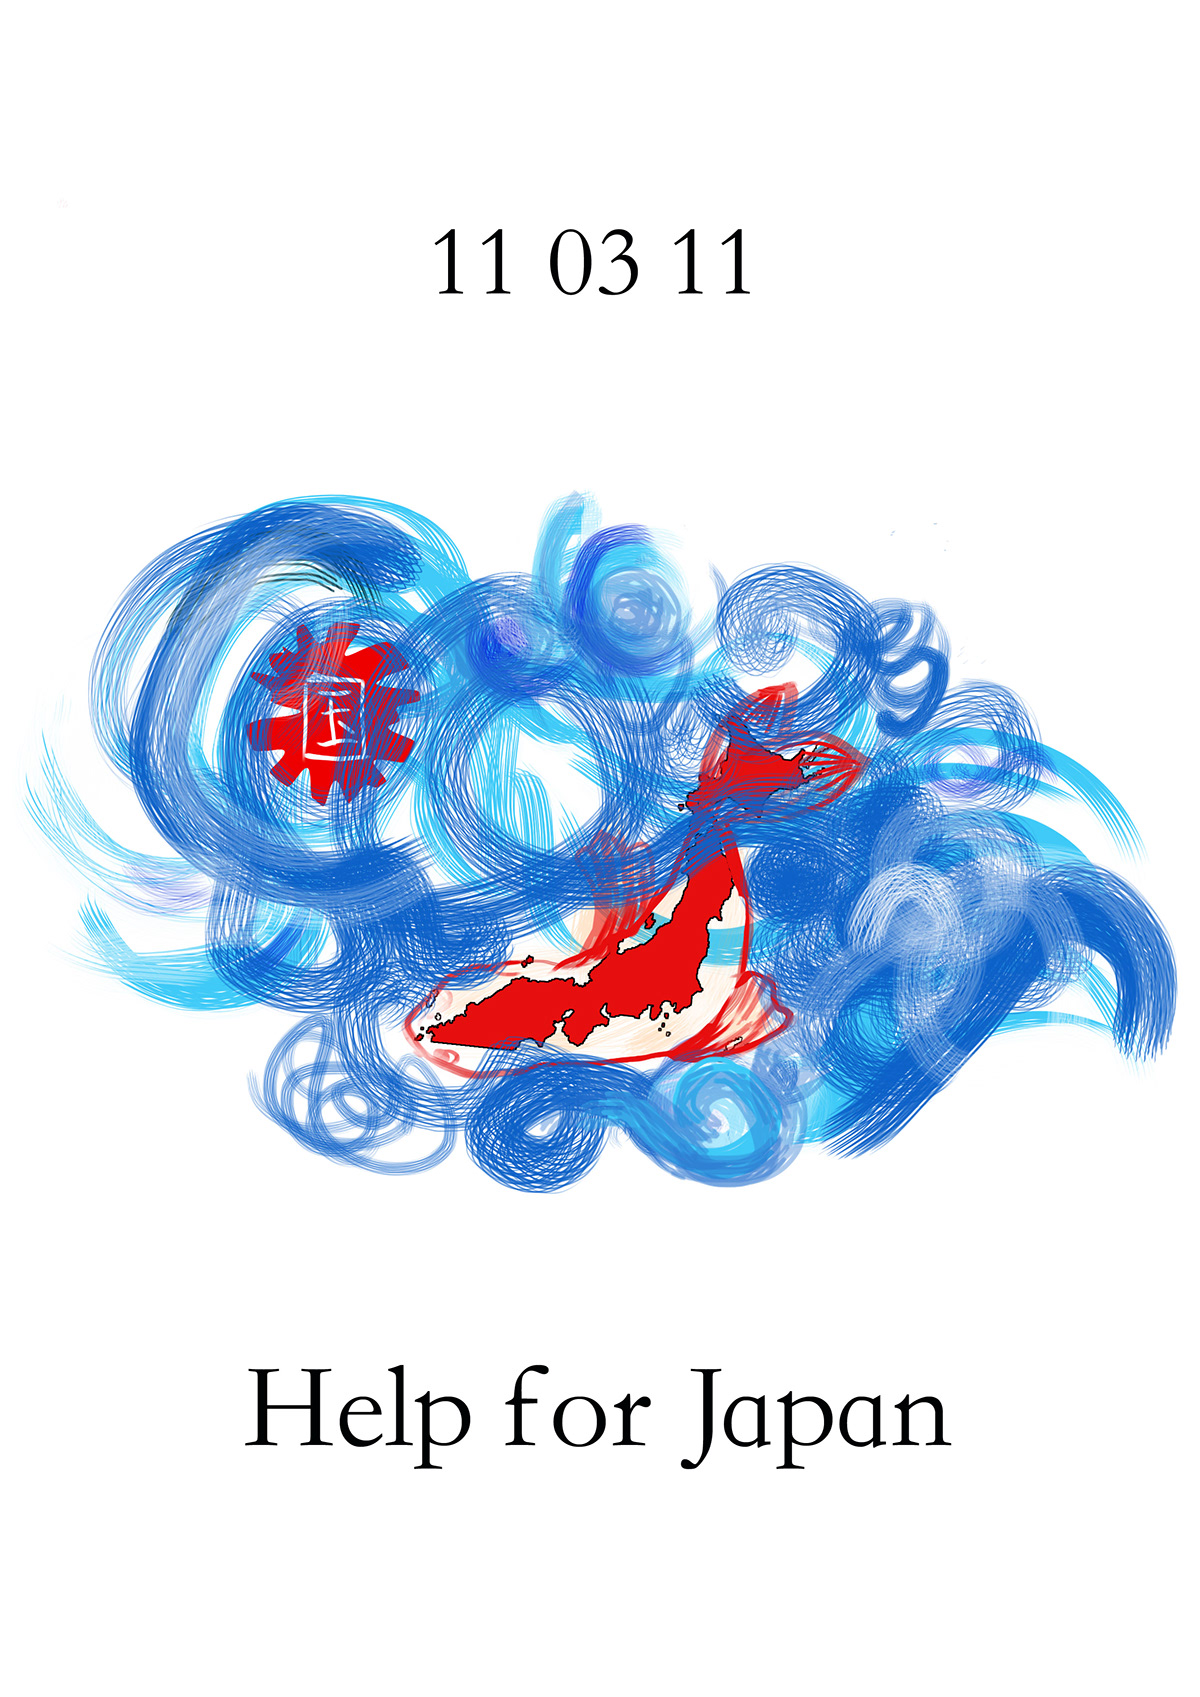 aiutare il giappone help japan il sol levante hope giappone tsunami hope solidarietà